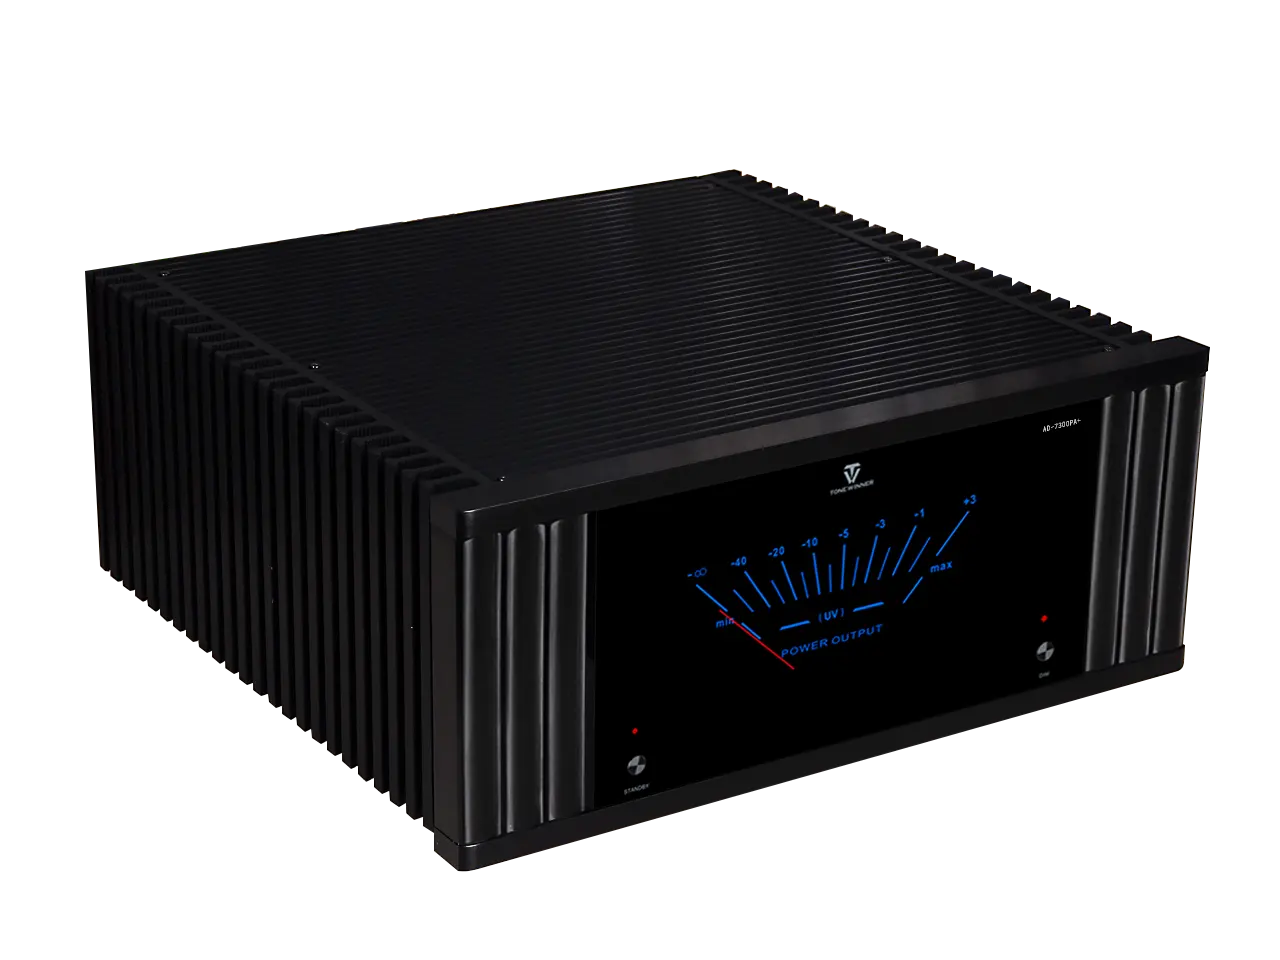 ToneWinner 7 canaux 2100W amplificateur haute puissance amplificateur AV karaoké professionnel pour système de cinéma maison